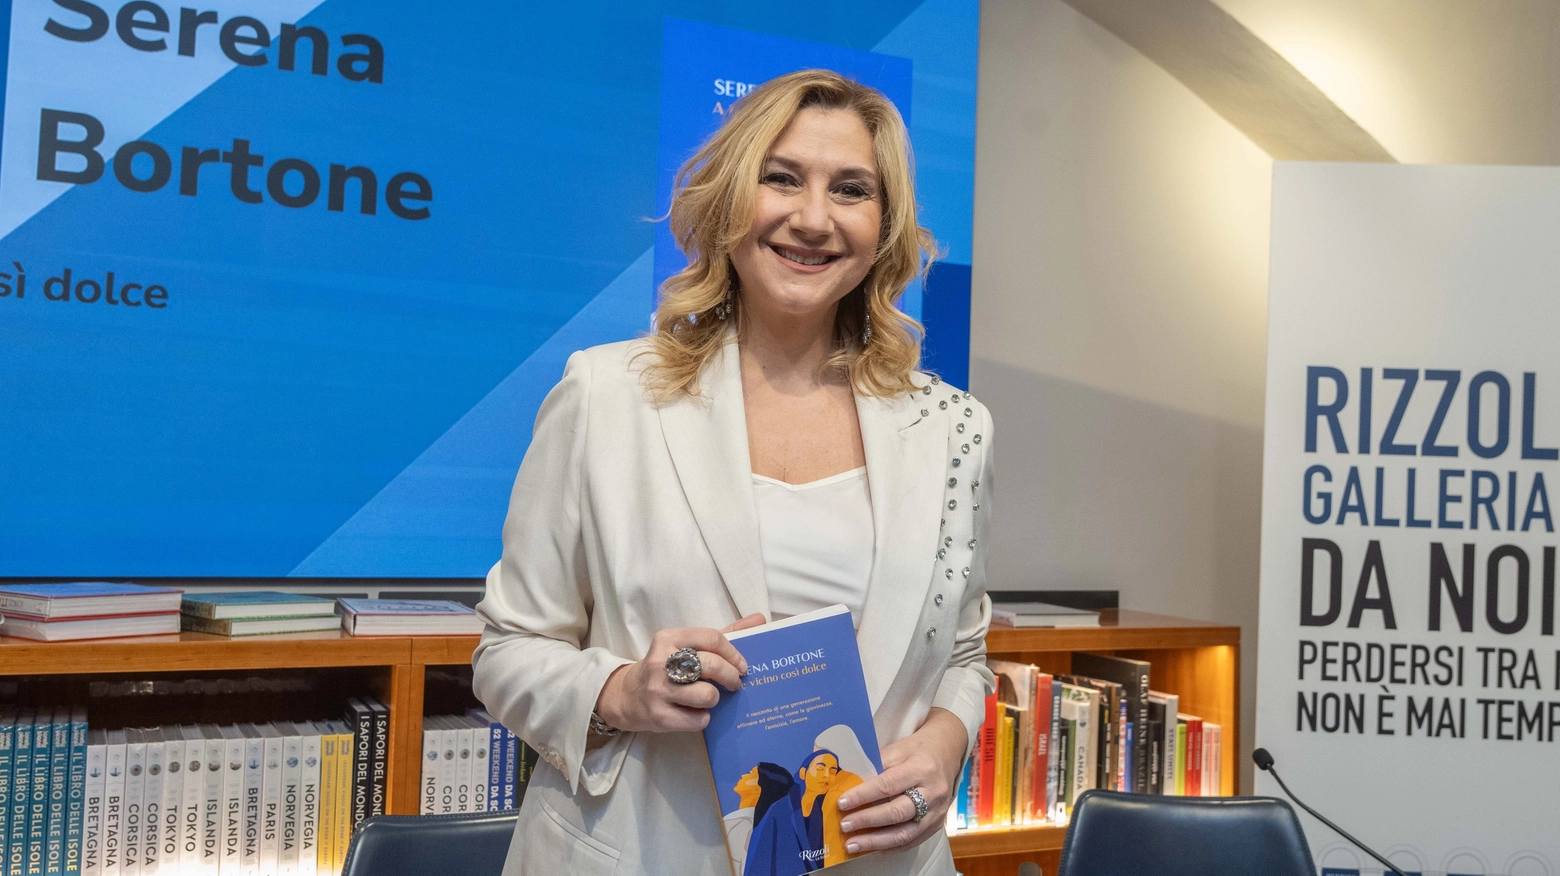 Serena Bortone presenta il suo libro "A te vicino così dolce" alla Libreria Rizzoli in Galleria Vittorio Emanuele (Foto Fasani)